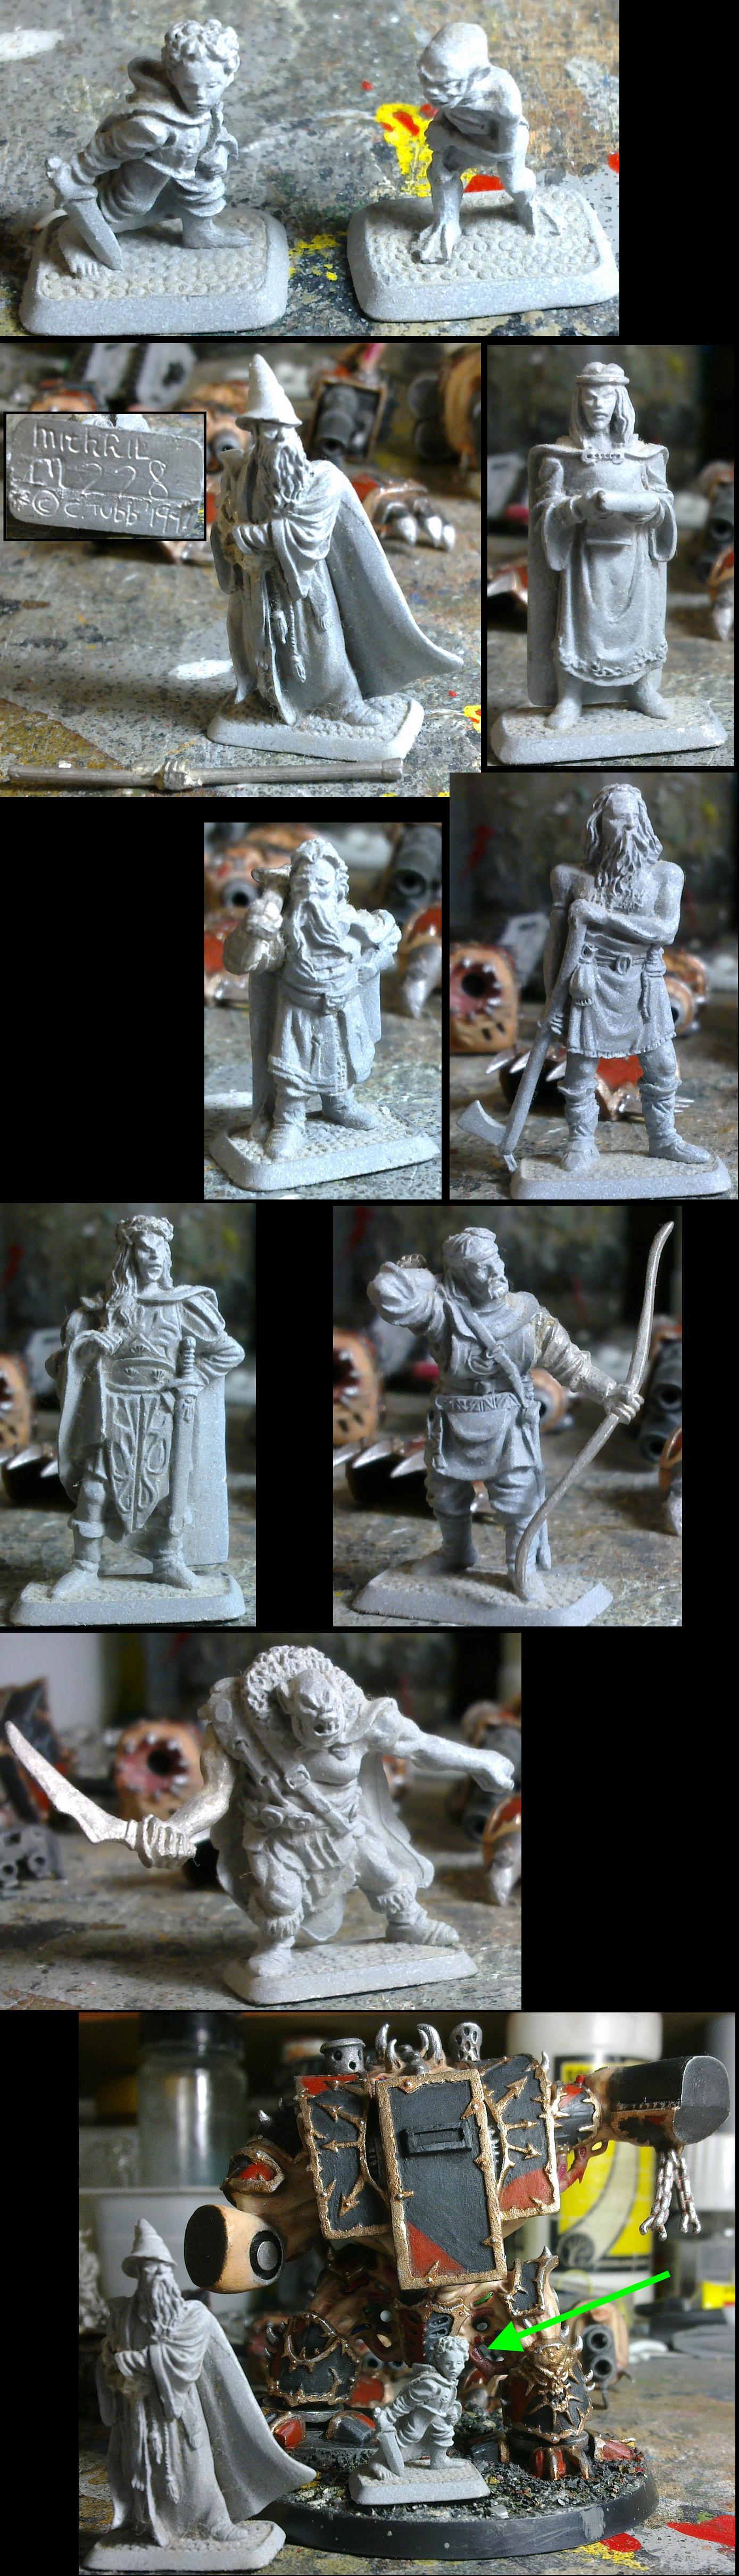 Mithril miniatures hobbit figures